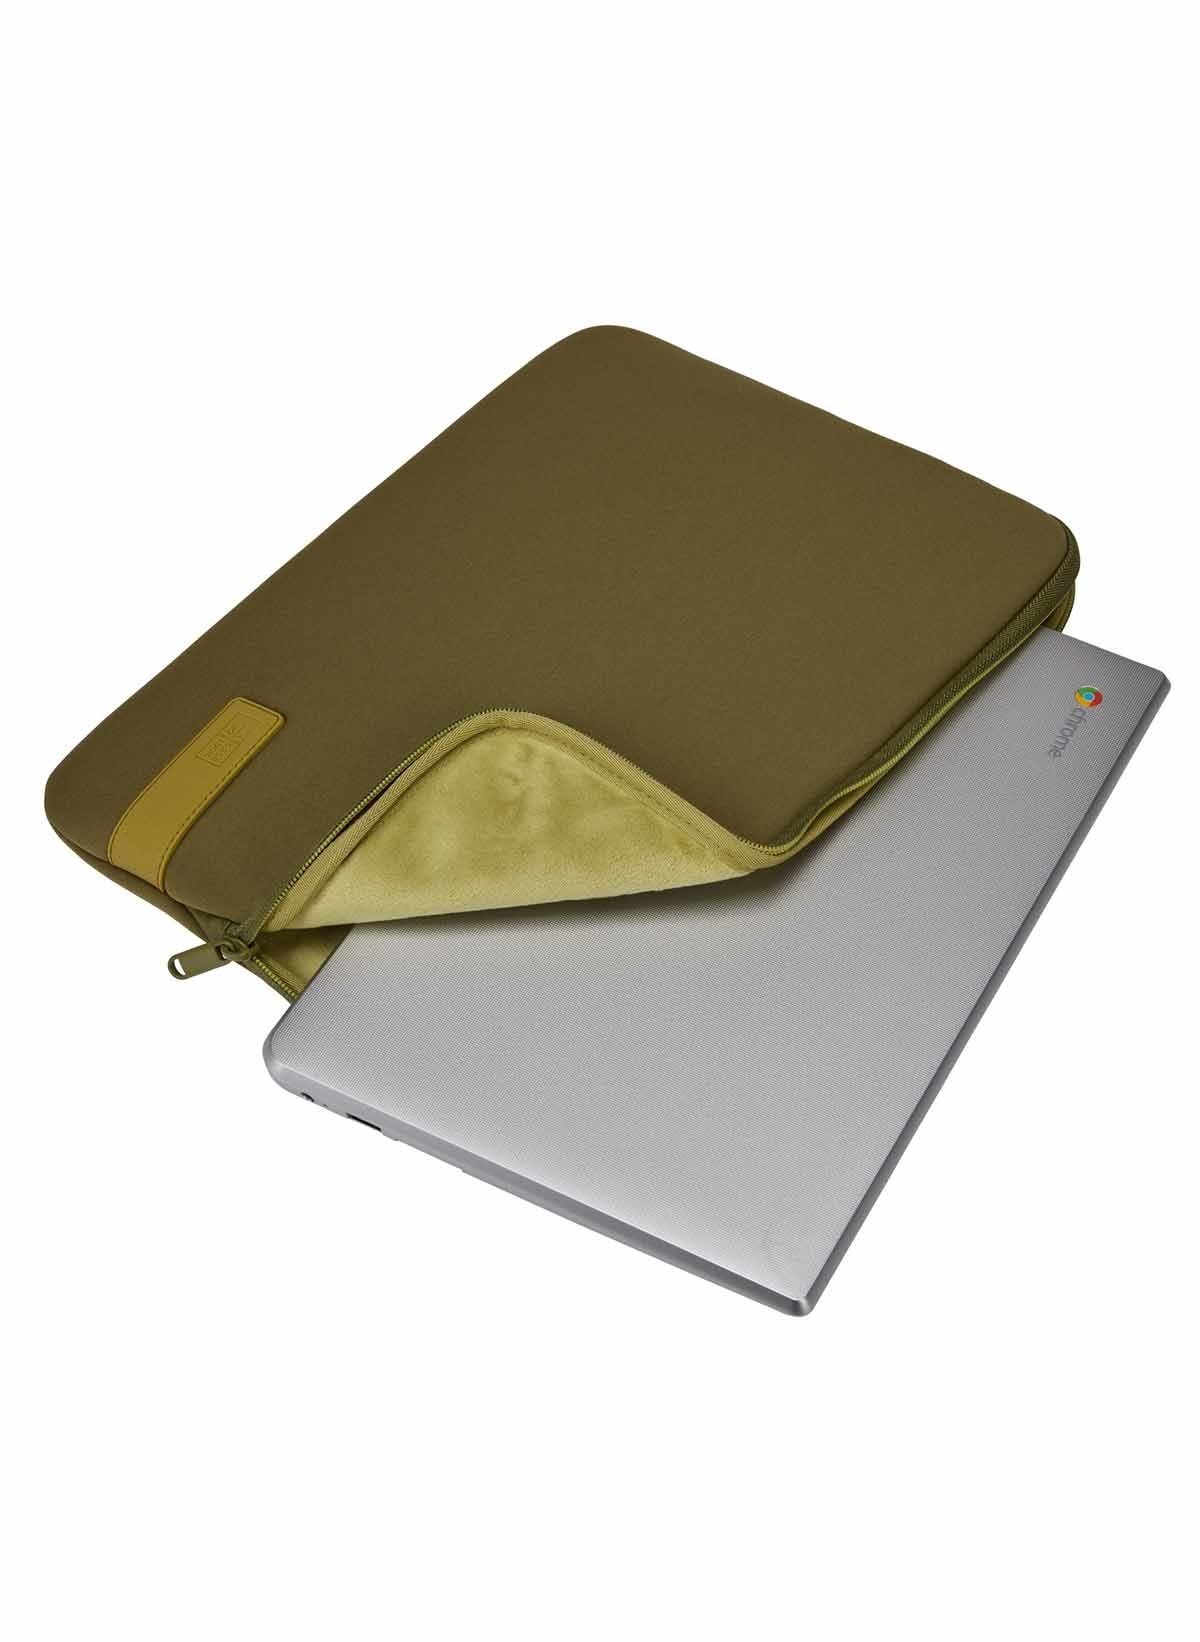 Reflect Logic Laptoptasche Olive Capulet Case Sleeve